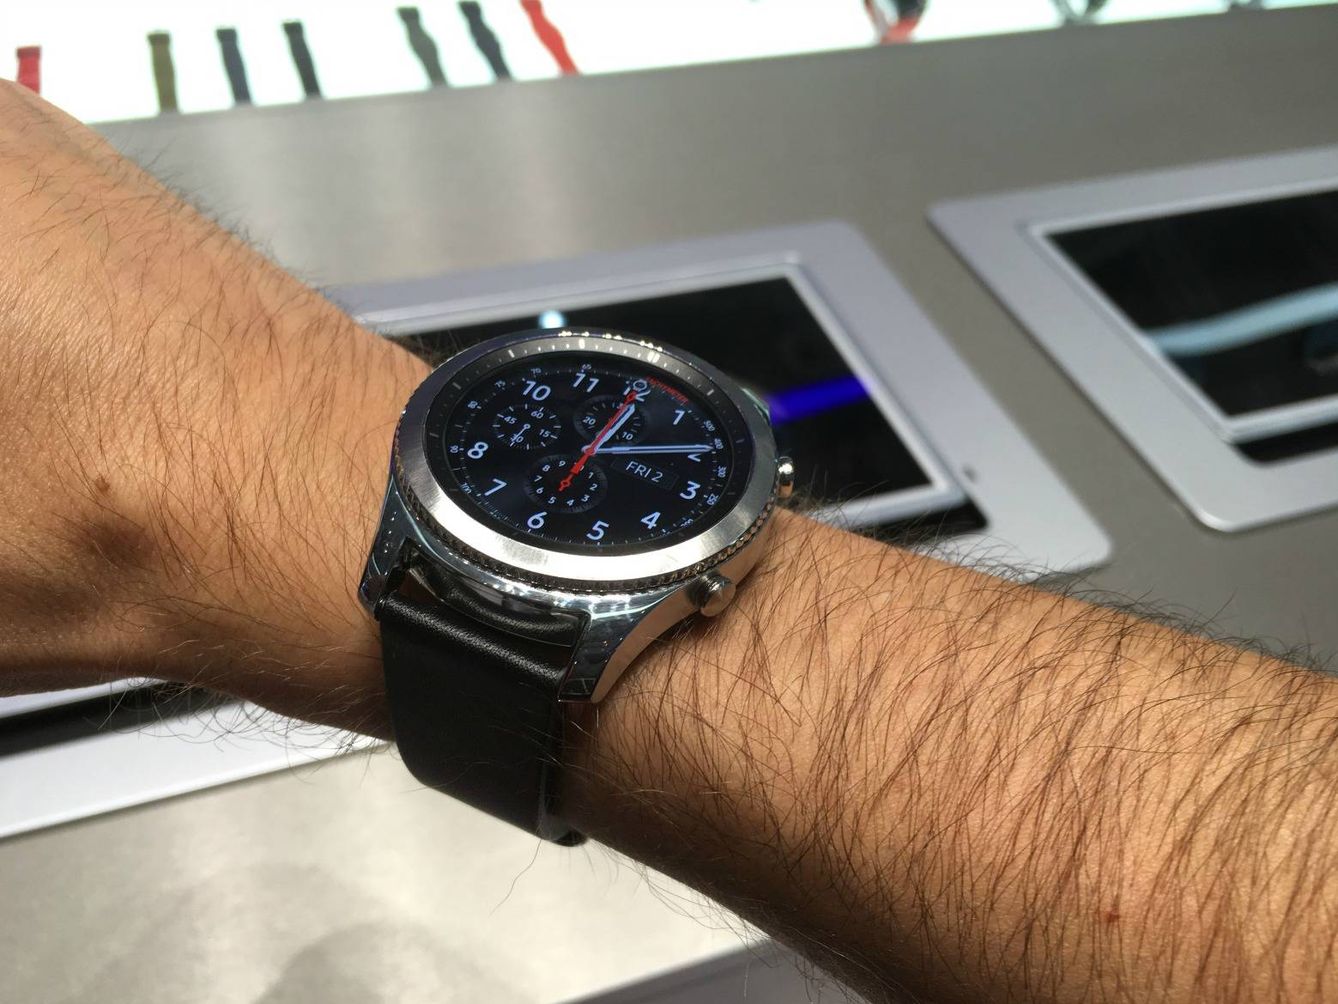 La pantalla del Gear S3 siempre está encendida para consultar la hora en cualquier momento. (J. E.)